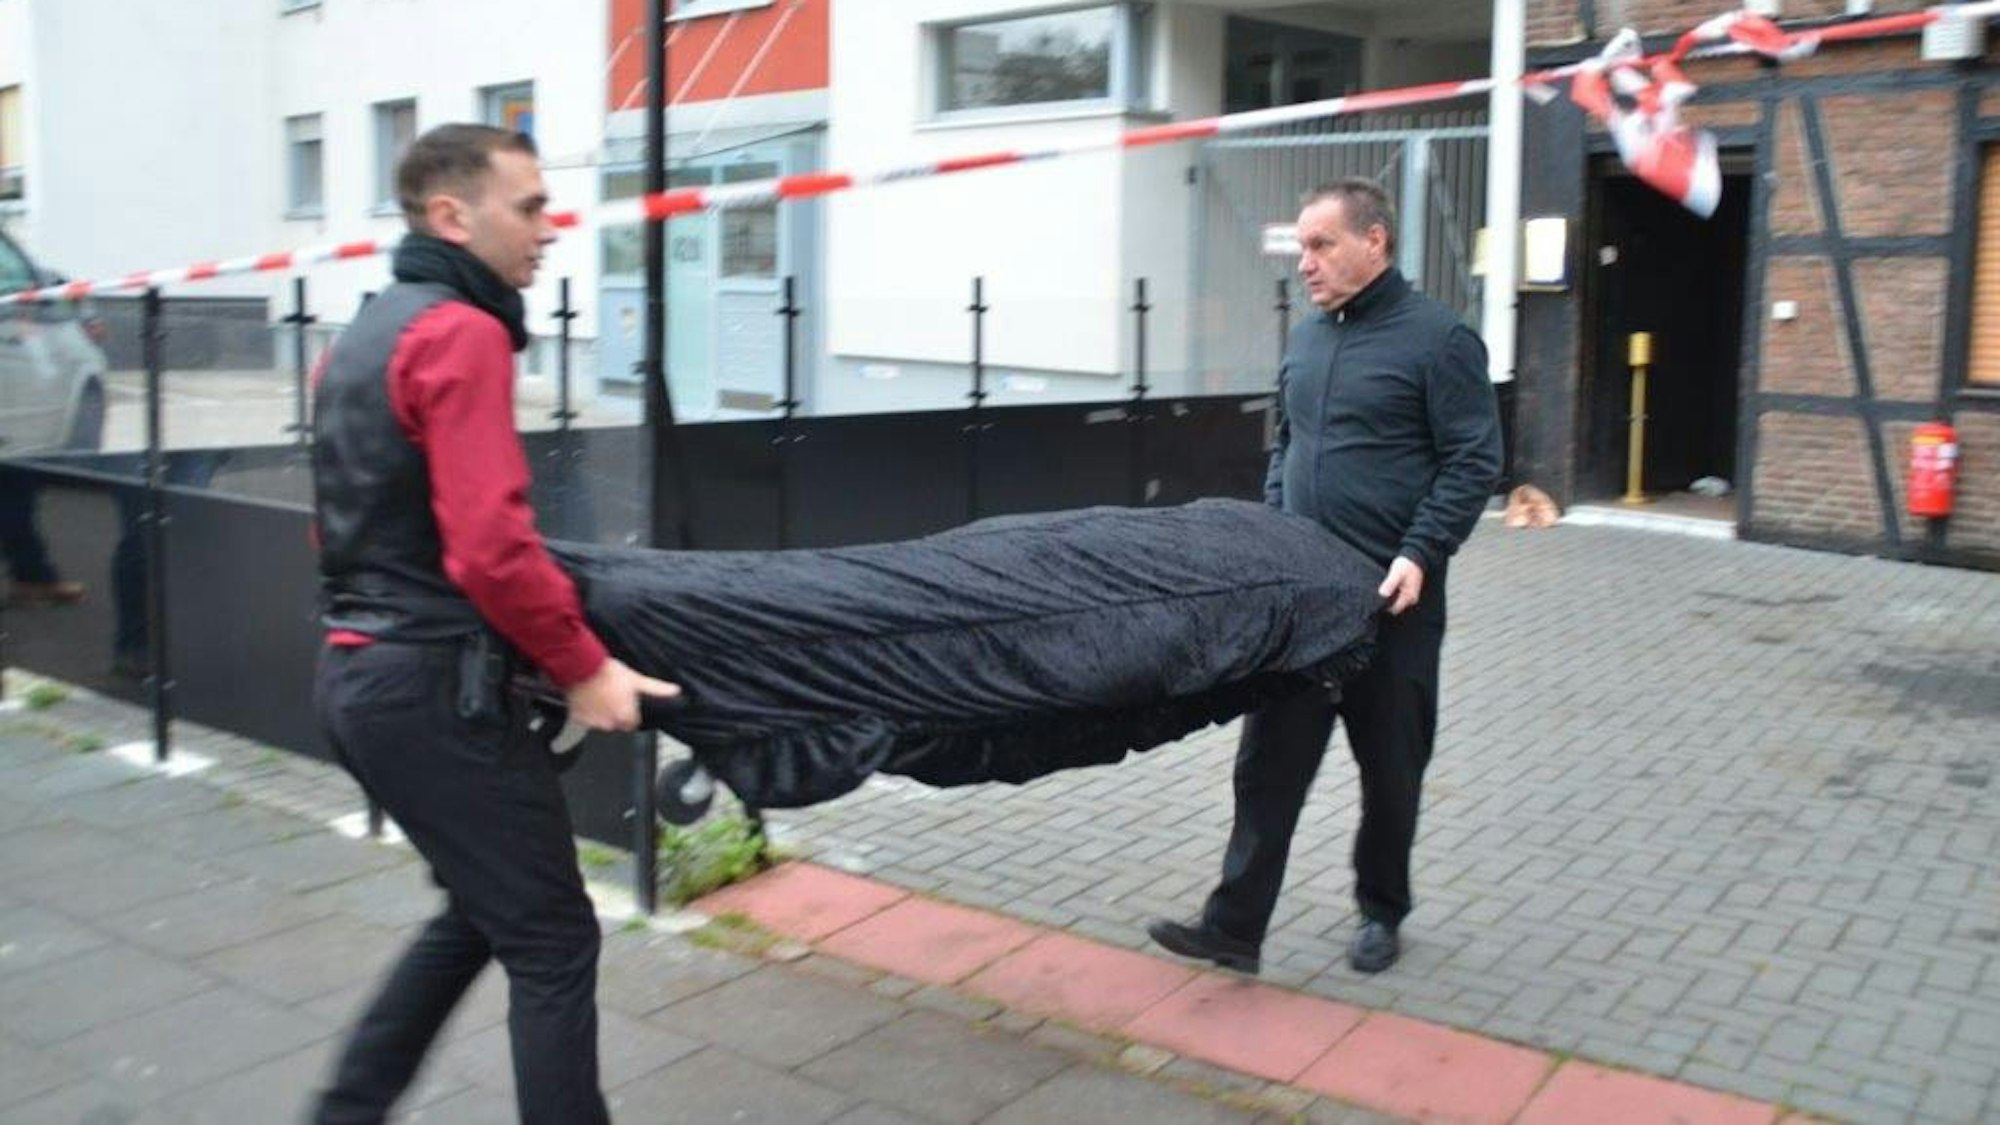 Vor einer Kneipe, die mit Flatterband der Polizei abgesperrt ist, tragen zwei Bestatter auf einer Bahre eine abgedeckte Leiche weg.